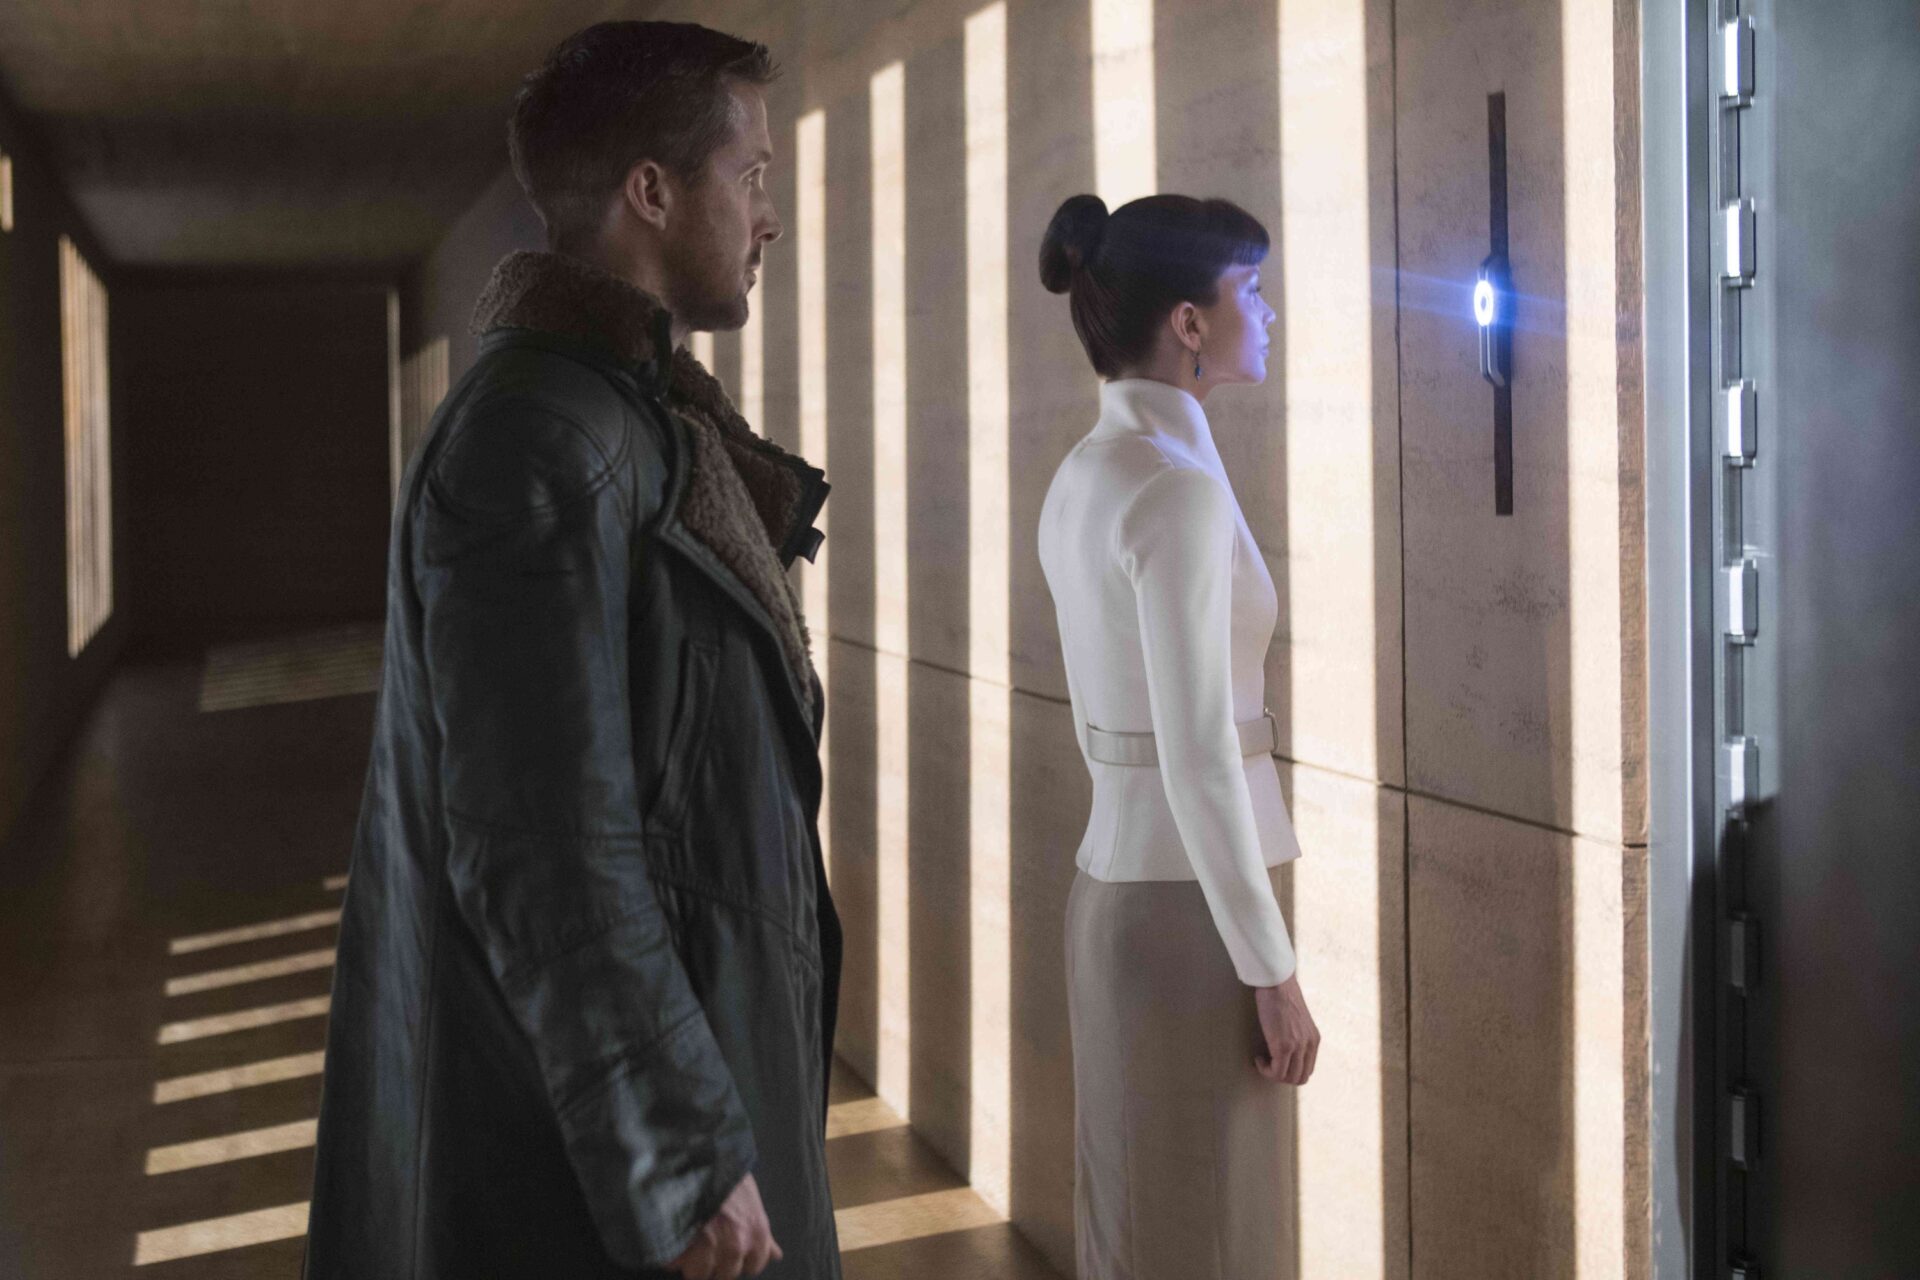 Blade Runner 2049: Das Bild zeigt eine Frau, die vor einer Wand steht und ihr Auge abscannen lässt. Hinter ihr steht ein Mann, der wartet